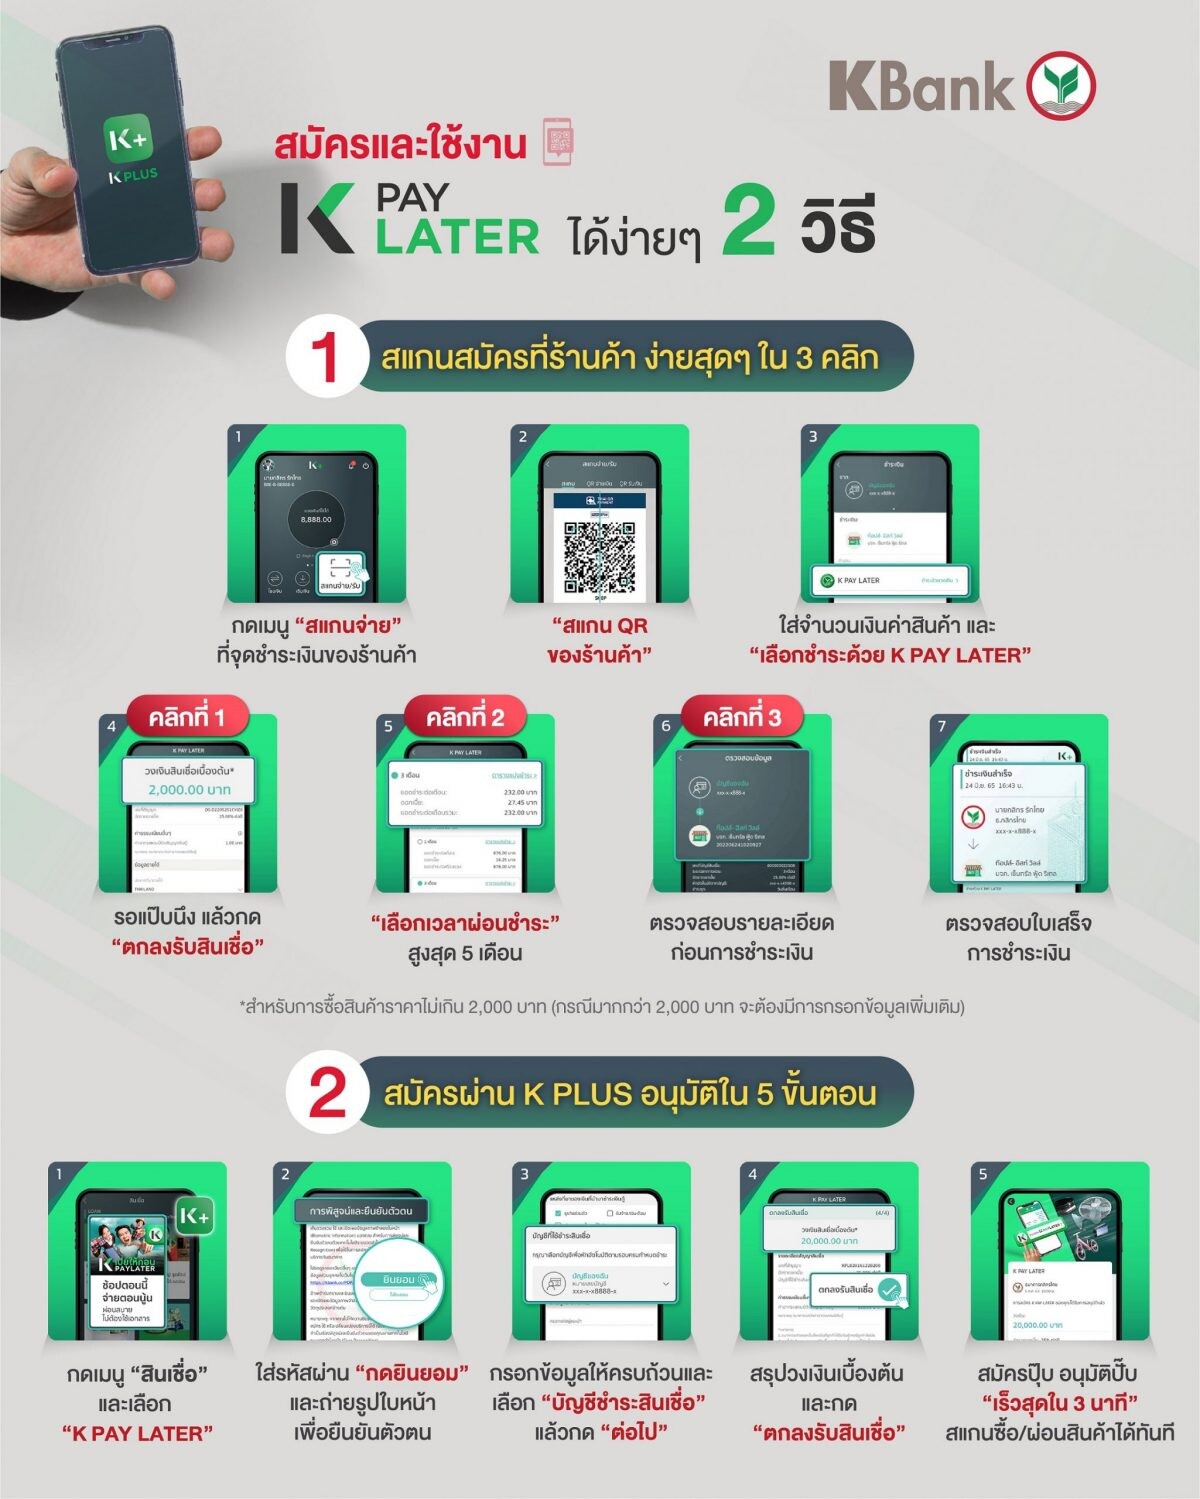 กสิกรไทยเปิดตัว " K PAY LATER " เป็นธนาคารแรก ช่วยคนตัวเล็กเข้าถึงสินเชื่อซื้อก่อนจ่ายทีหลัง ได้สะดวกผ่าน K PLUS  ไม่มีสลิปเงินเดือนก็สมัครได้